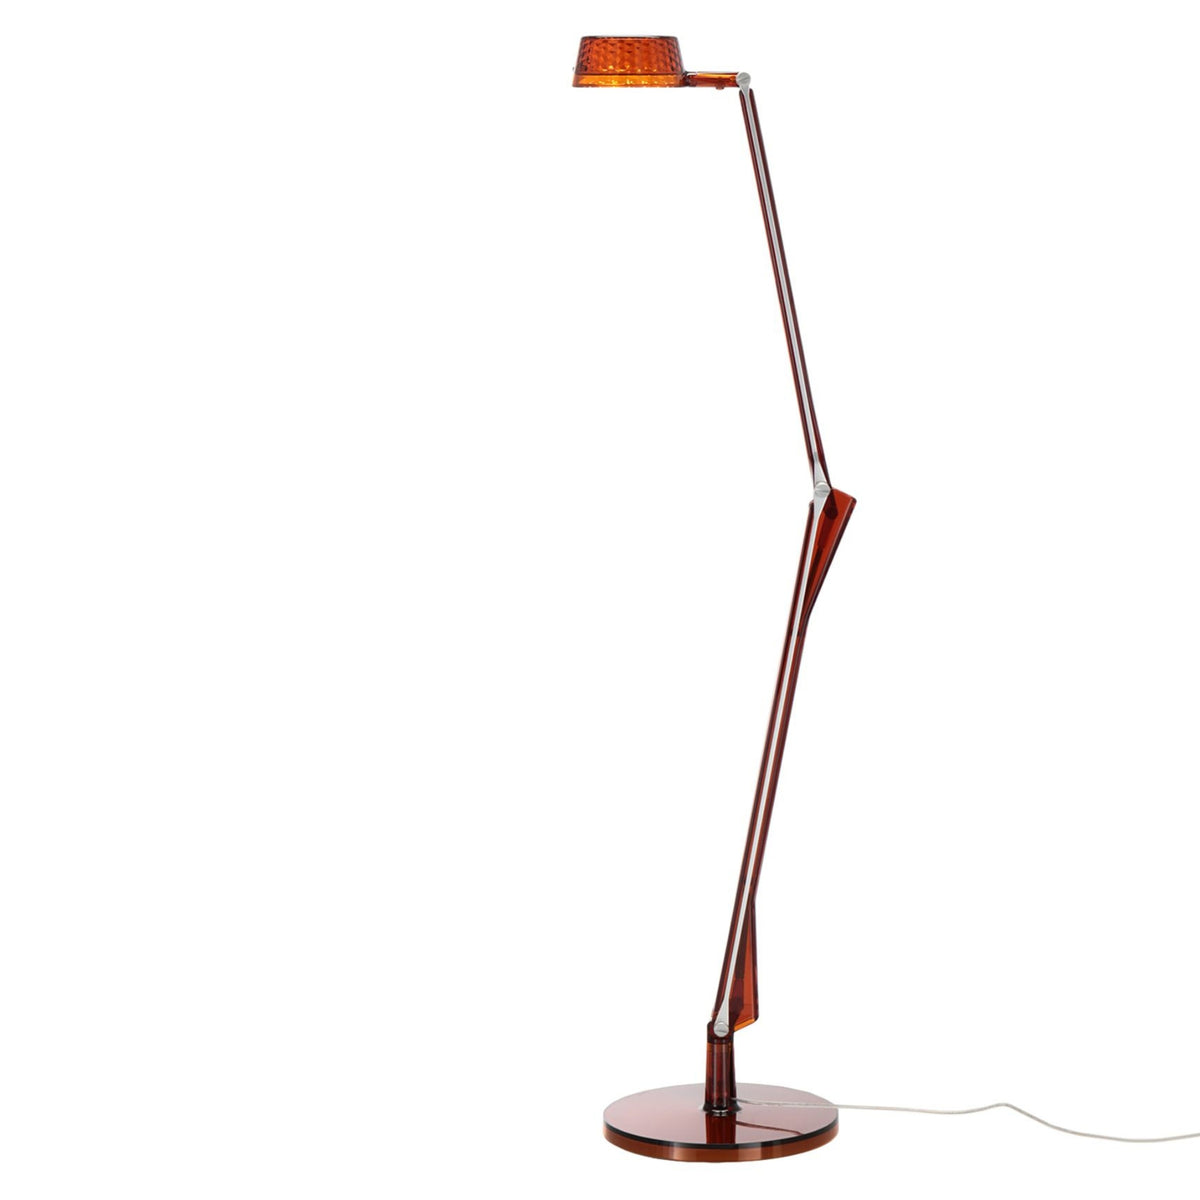 Aledin Dec Table Lamp - Kartell